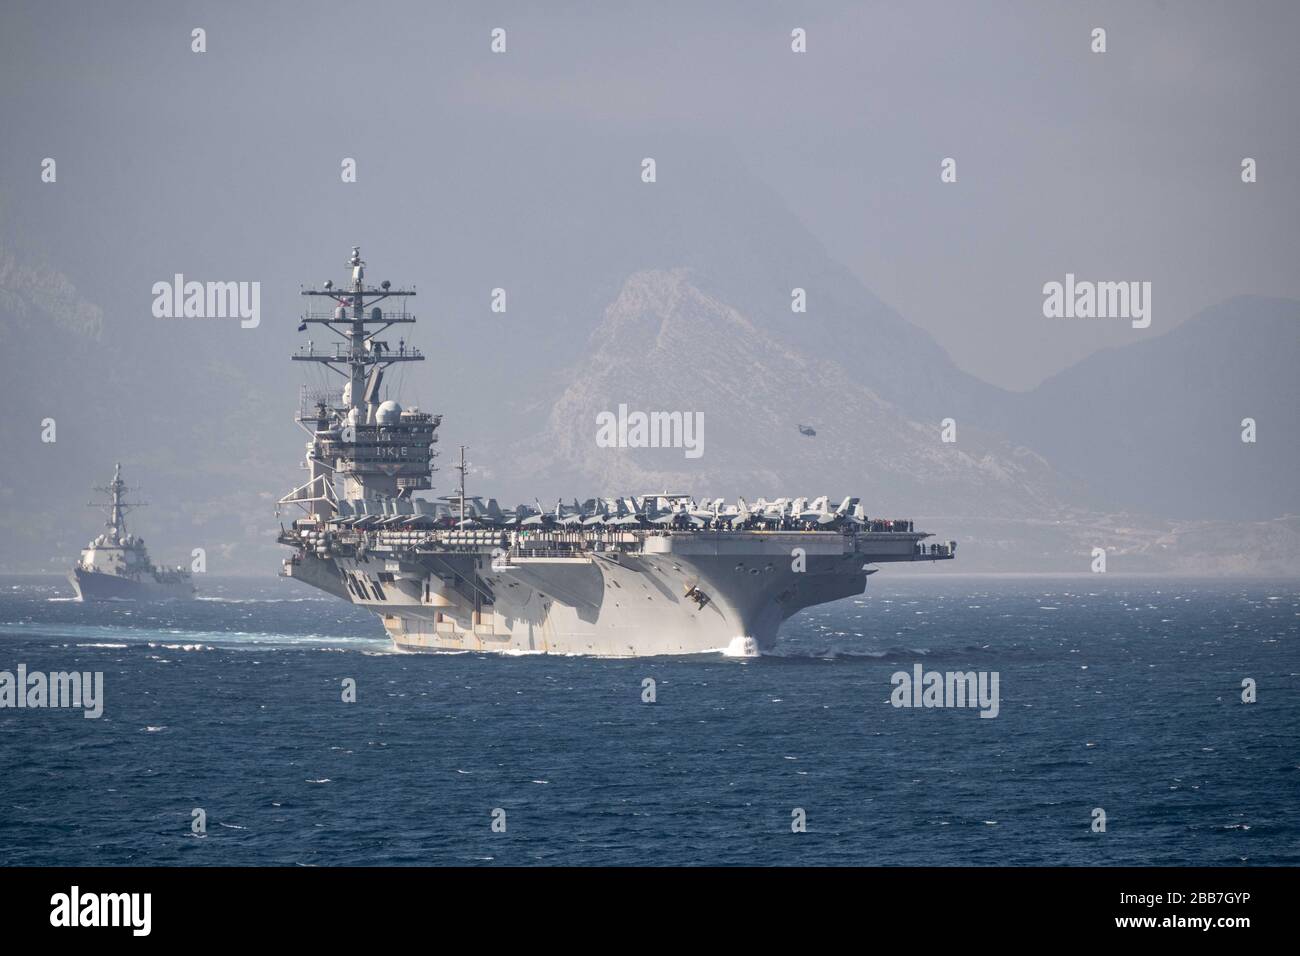 La nave portaerei USS Dwight D. Eisenhower della classe americana Nimitz con il cacciatorpediniere guidato della classe Arleigh Burke USS James E. Williams transita nello stretto di Gibilterra il 9 marzo 2020 nel Mar Mediterraneo. Foto Stock